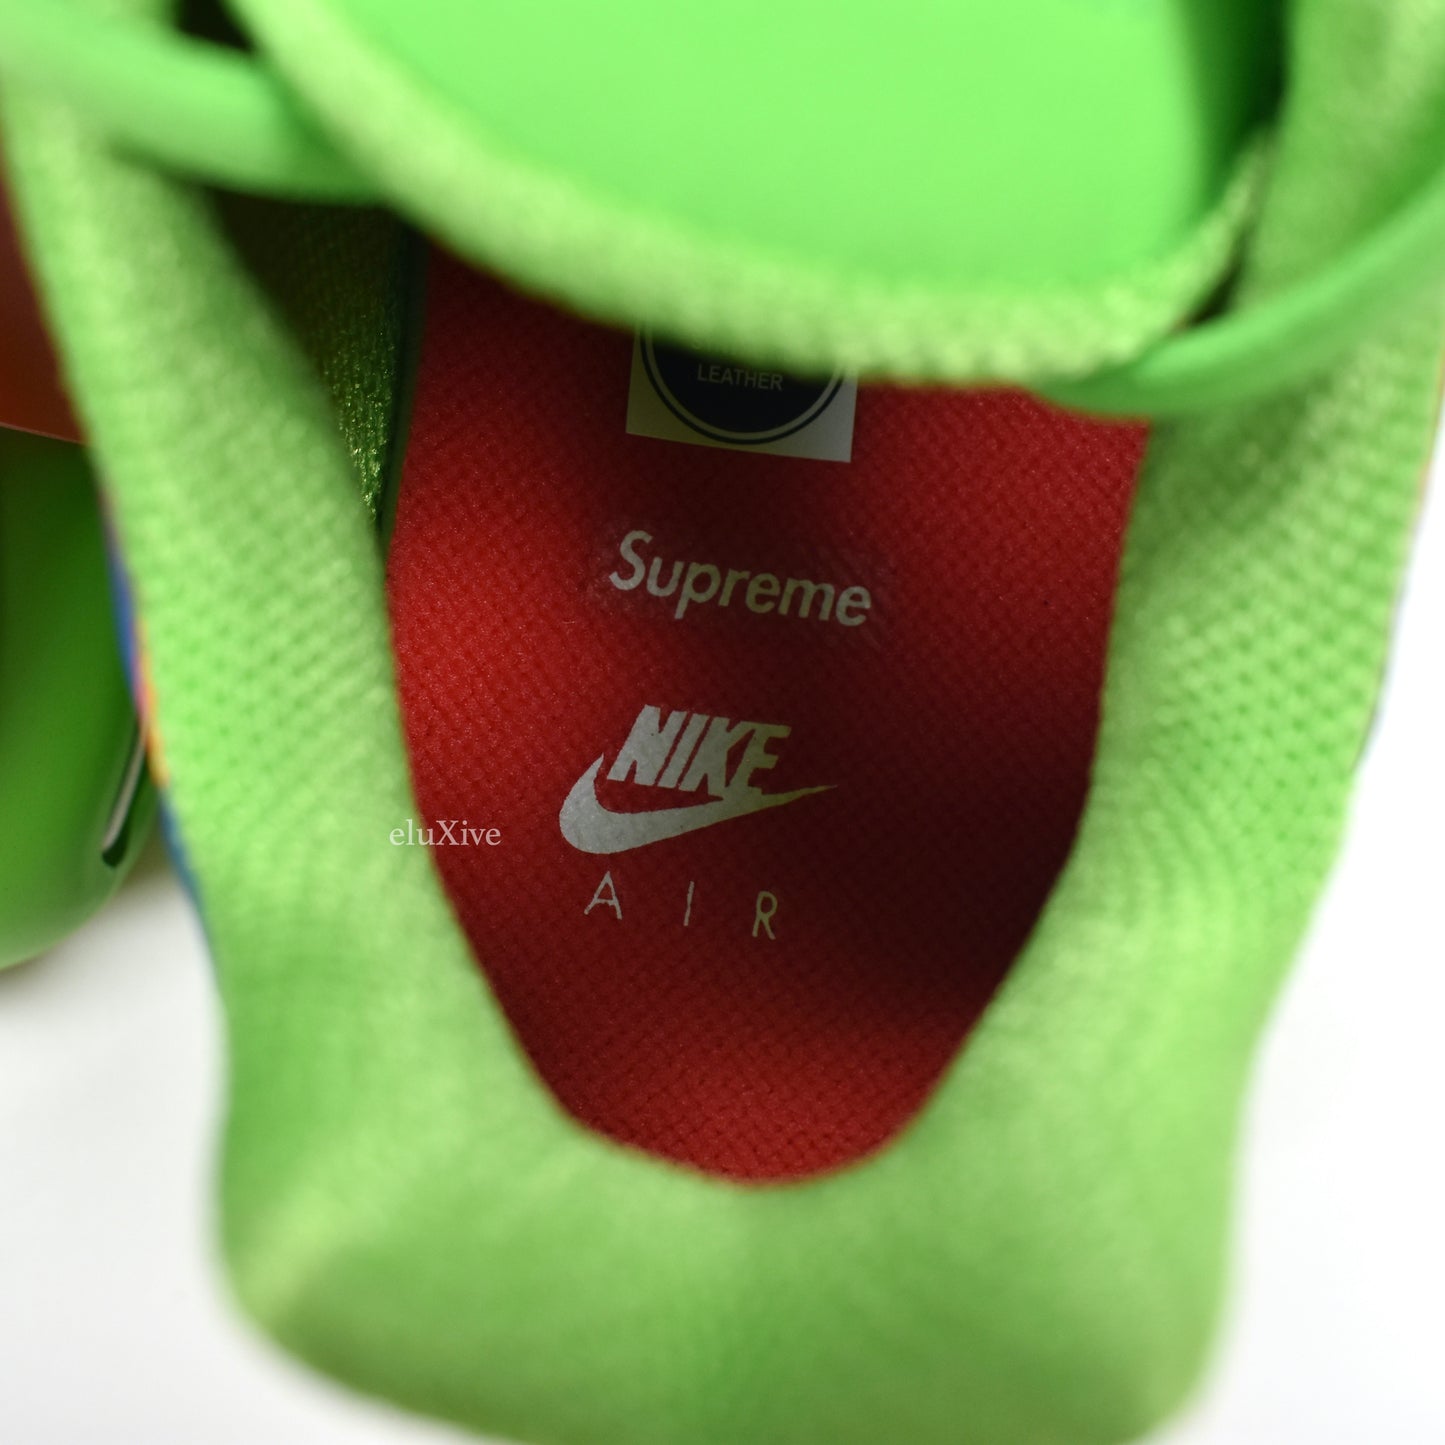 Supreme x Nike - Air Max Plus TN 'Mean Green'